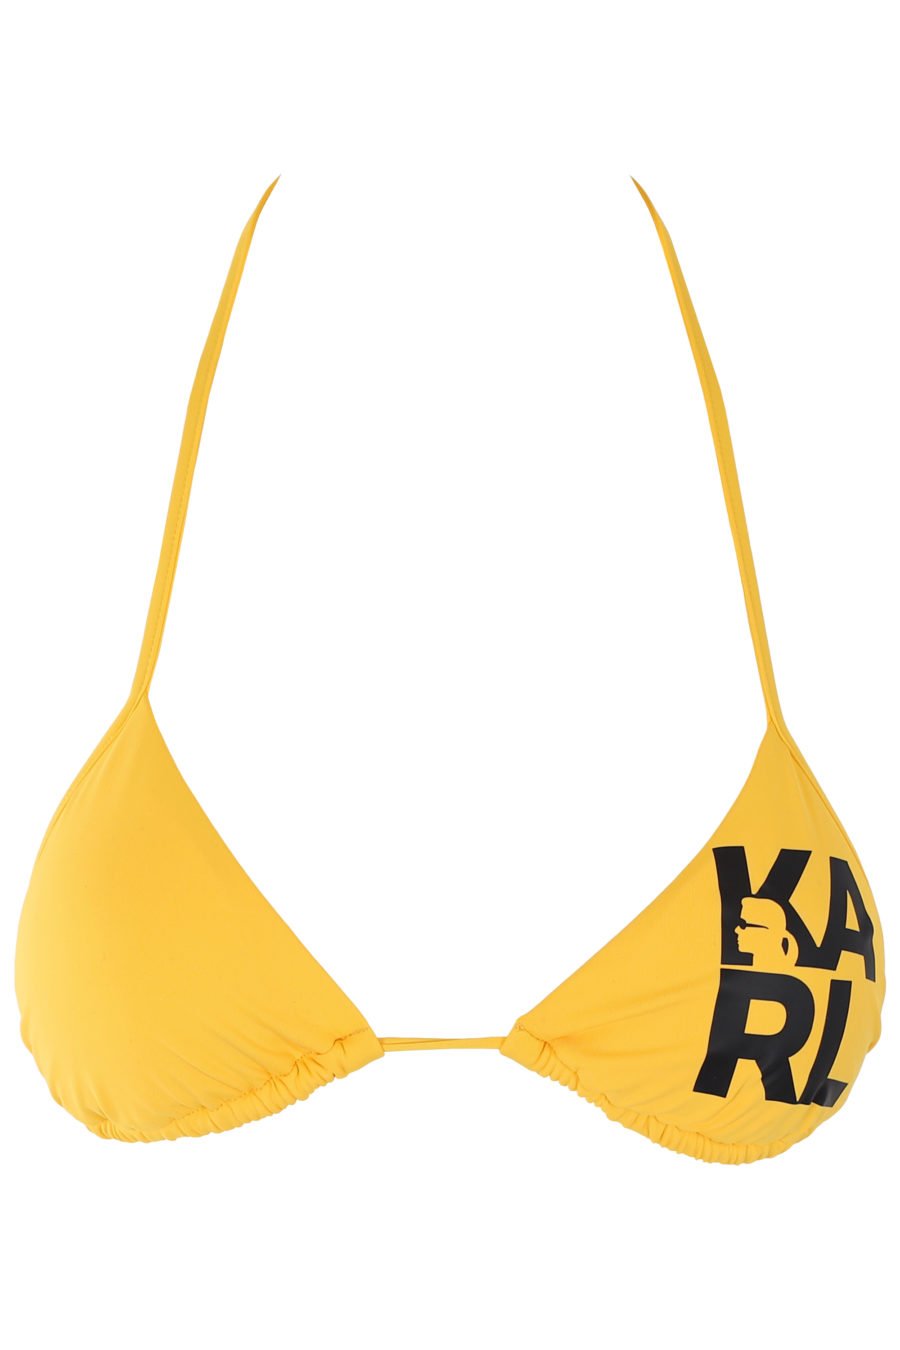 Yellow bikini top with black logo - IMG 1189